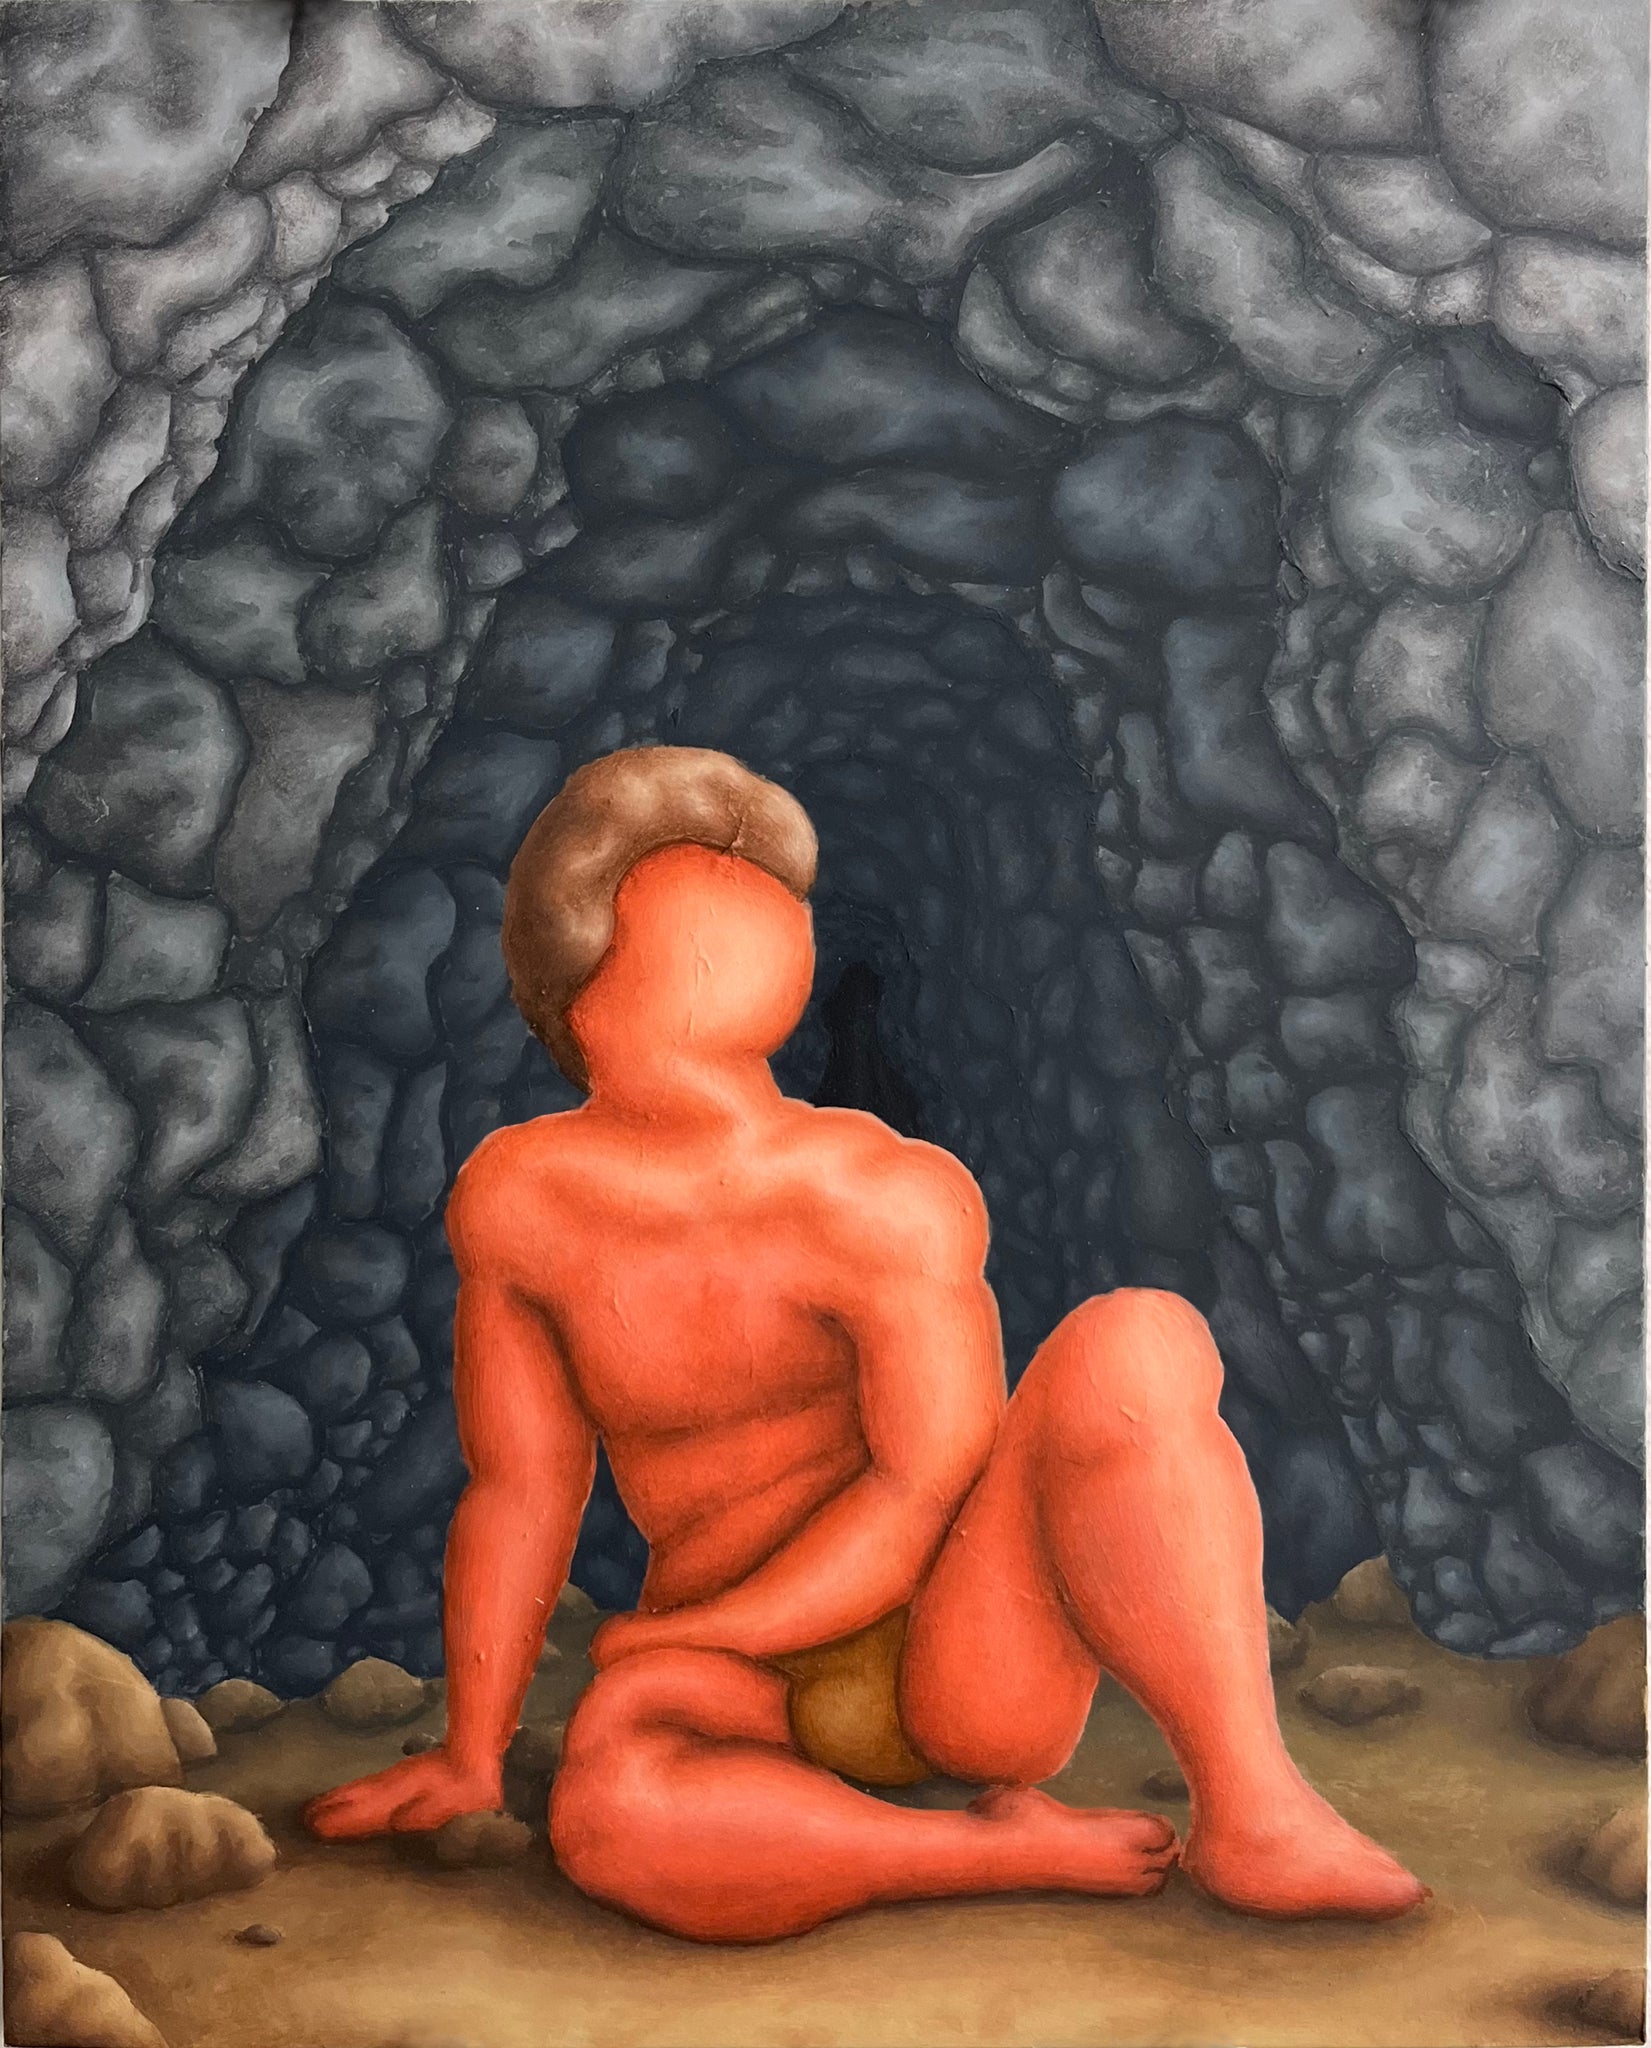 Michael MacDonald, "Boy Cave"